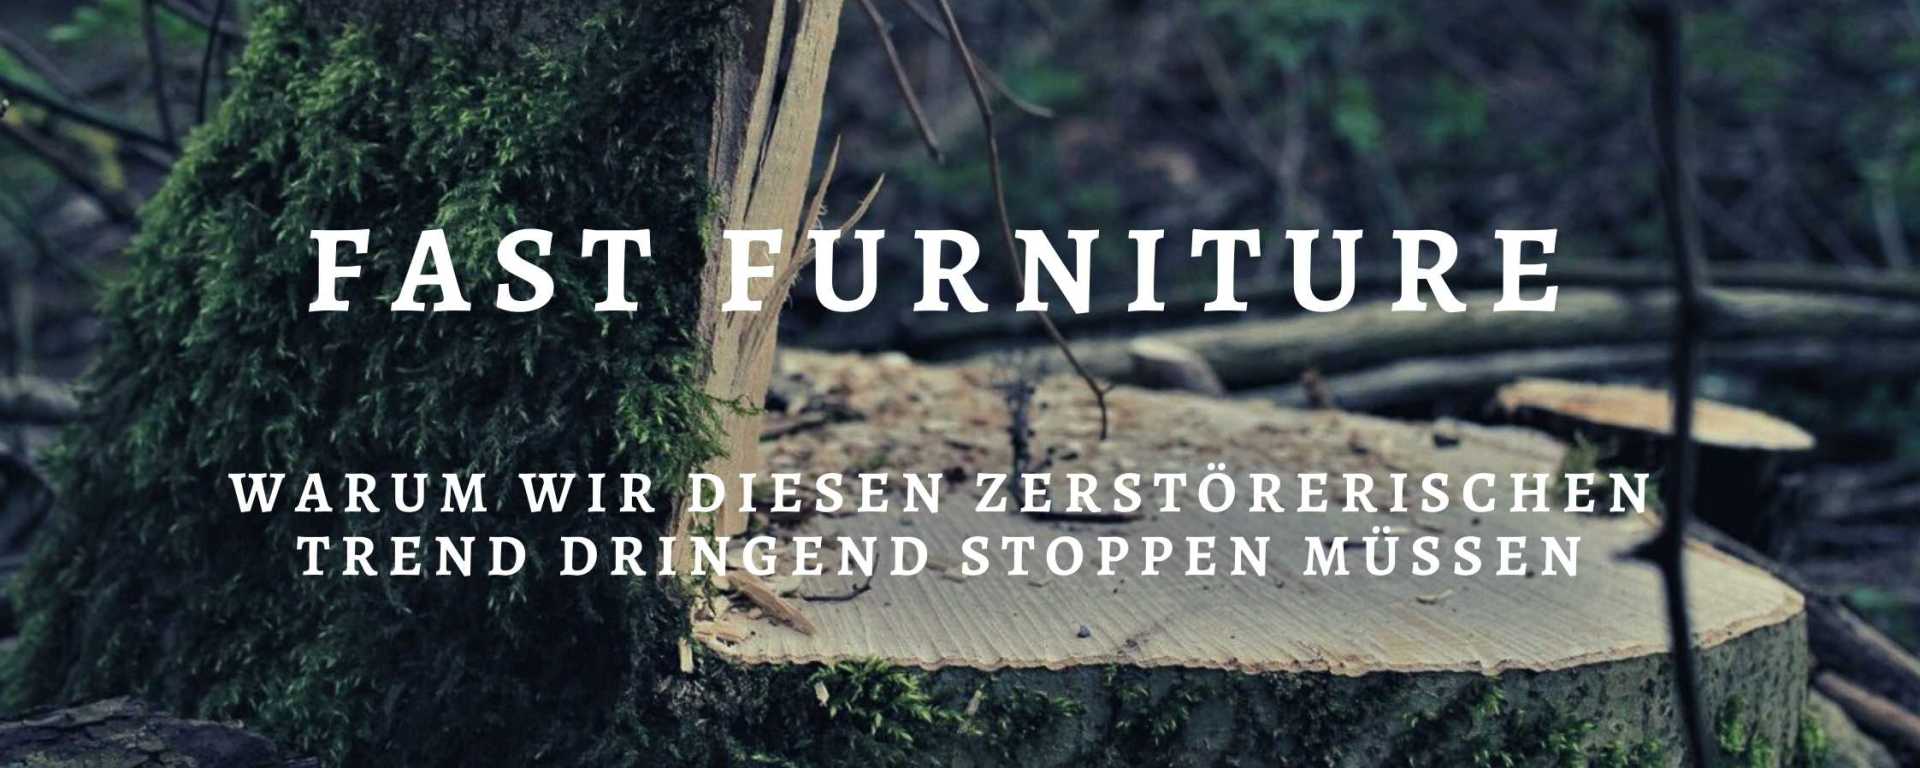 Titel Fast Furniture vor dem Hintergrund eines Baumstumpfs.